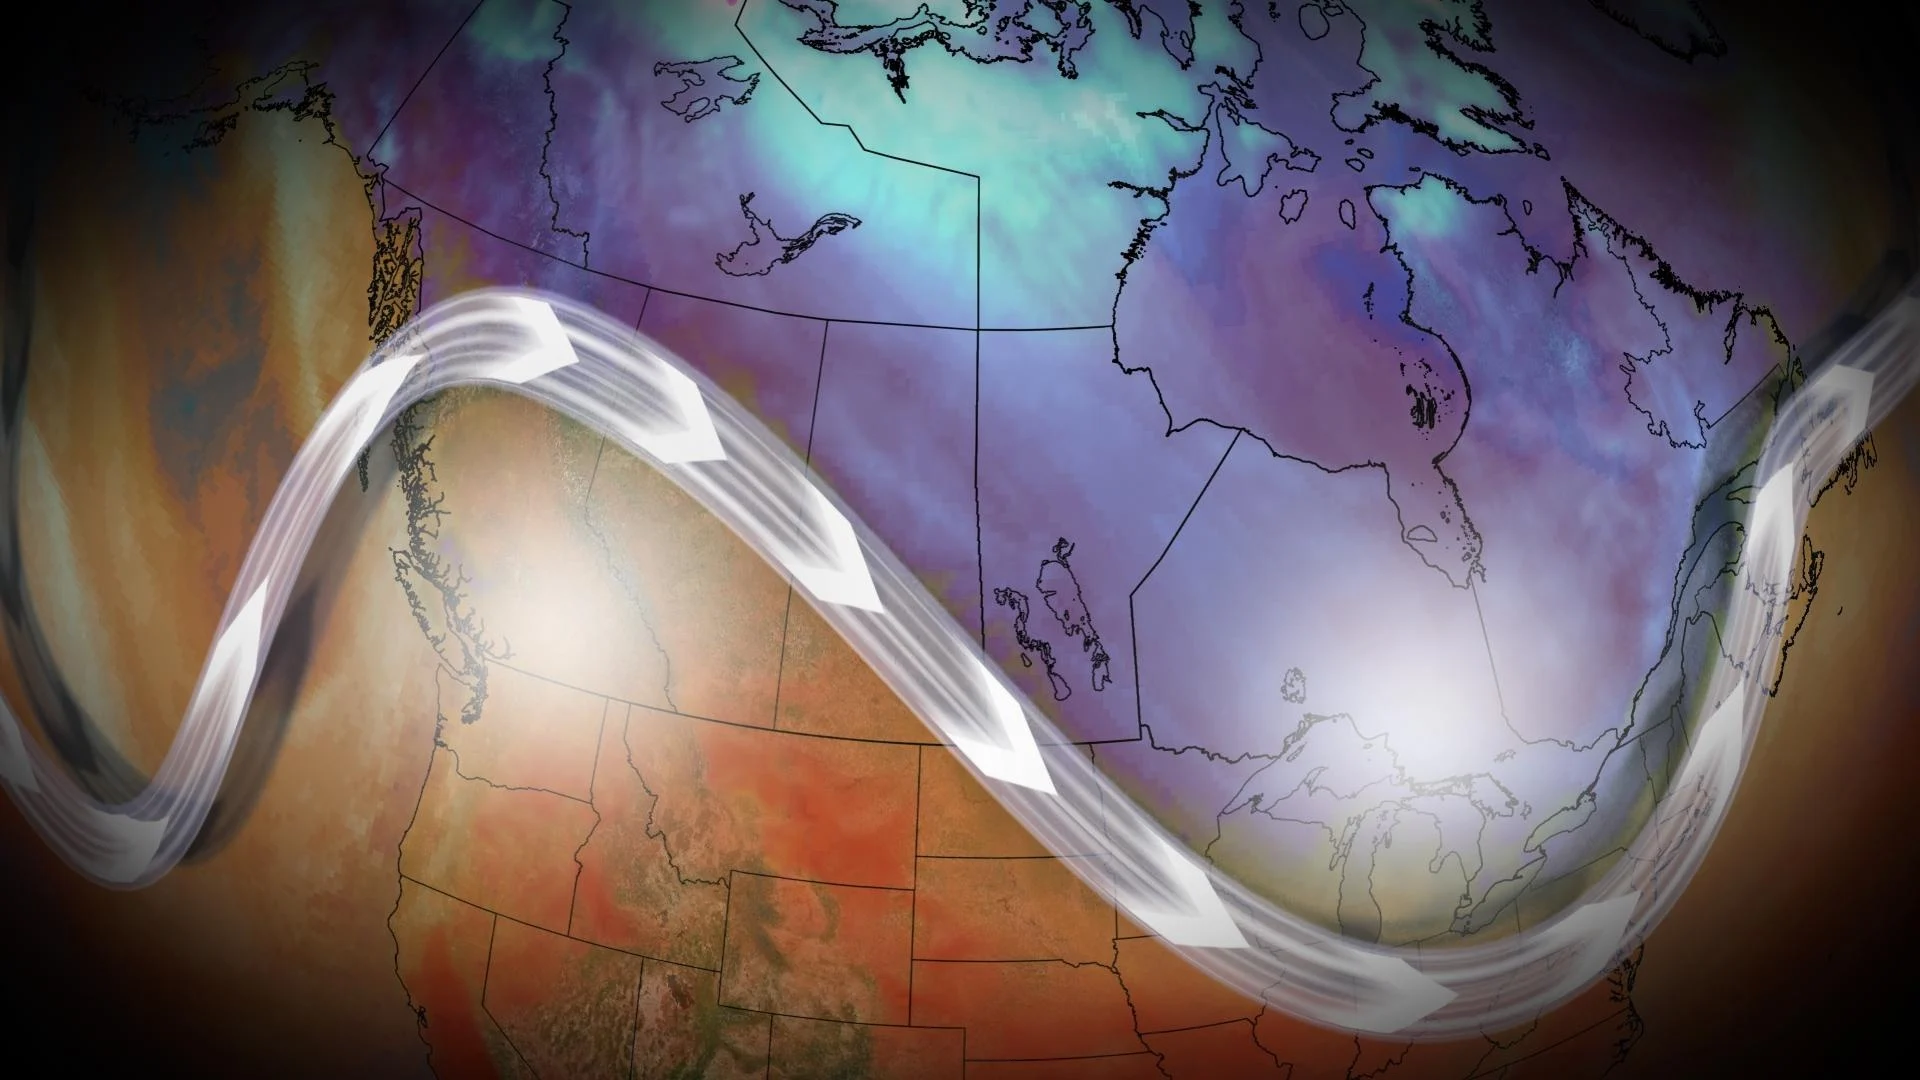 October attempts to defy El Niño in Canada with atypical fall warmth